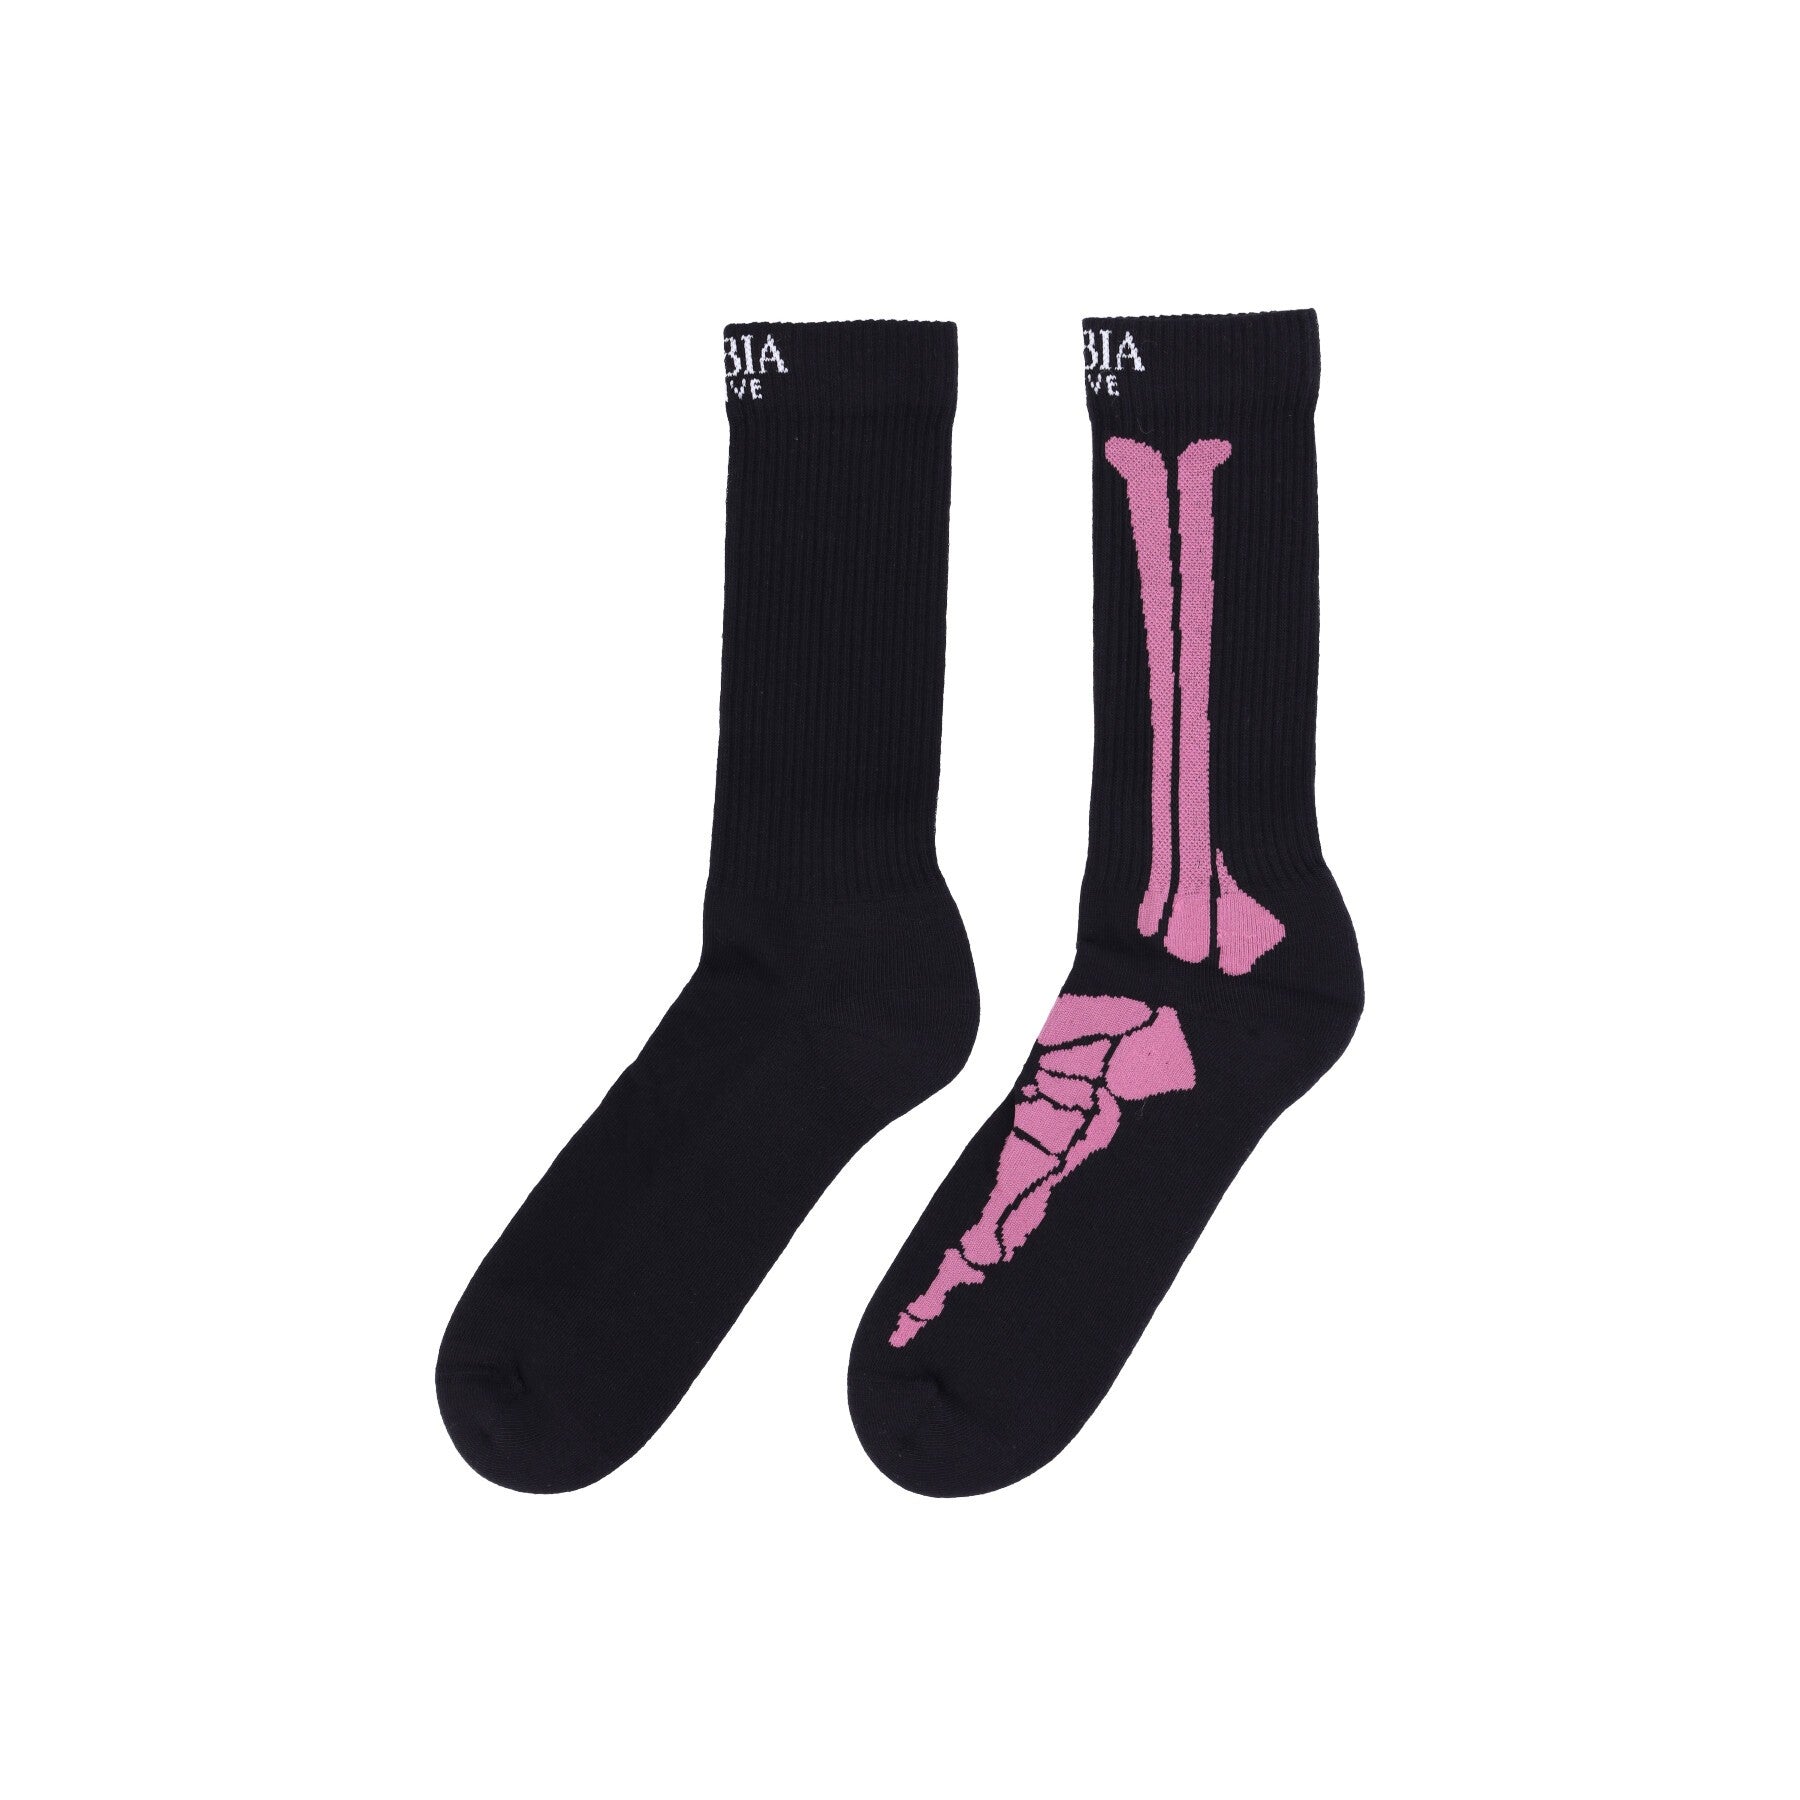 Phobia, Calza Media Uomo Bones Print Socks, Black/red